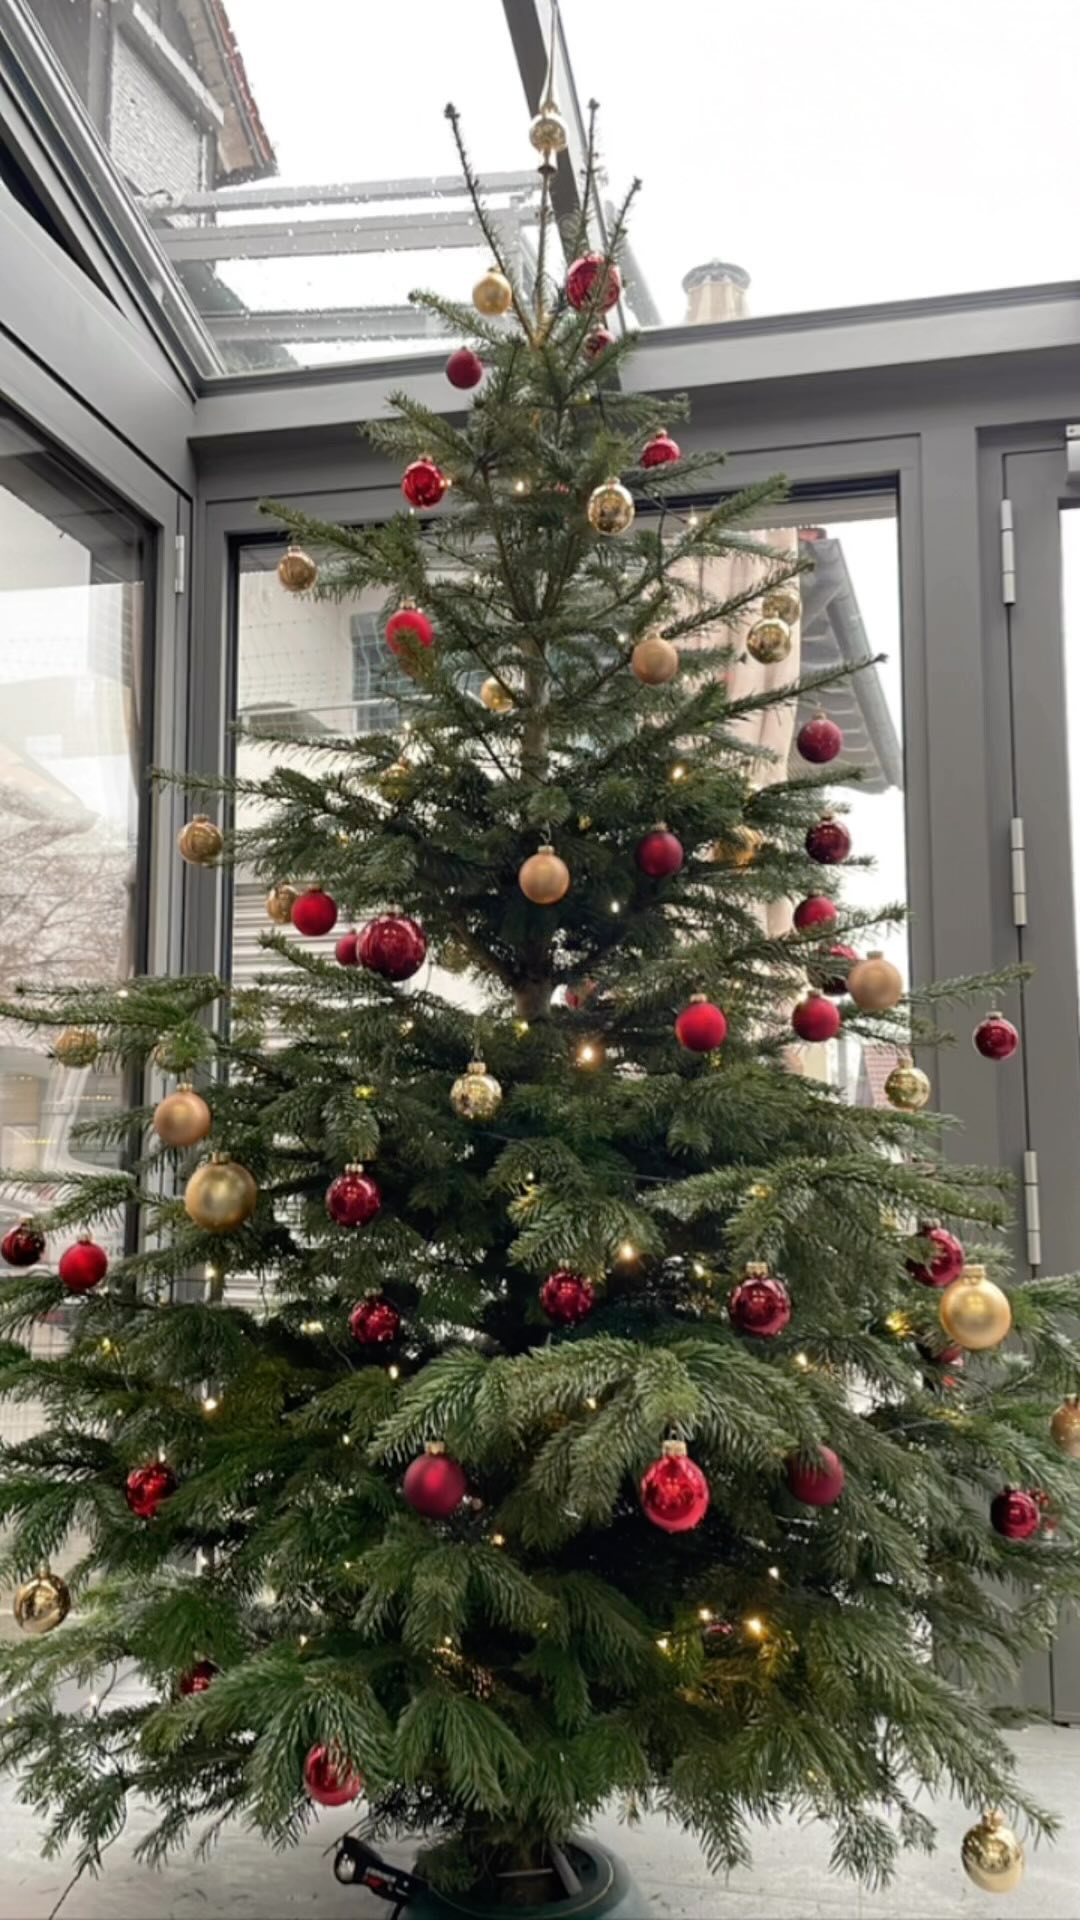 Wir haben heute bei uns die Weihnachtszeit eingeleutet und alle zusammen unsere Ausstellung festlich dekoriert! 🎄

& wie jedes Jahr - Vielen Dank an @oettlstefan für den schönen Baum! 😊

#kammererohg #einfachzumwohlfühlen #augsburg #ingolstadt #pfaffenhofen #schrobenhausen #aichach #aresing #montage #design #weihnachten #christbaum #spaßbeiderarbeit #outdoorliving #outdoorsonnenschutz #garten #sonne #ausbildung